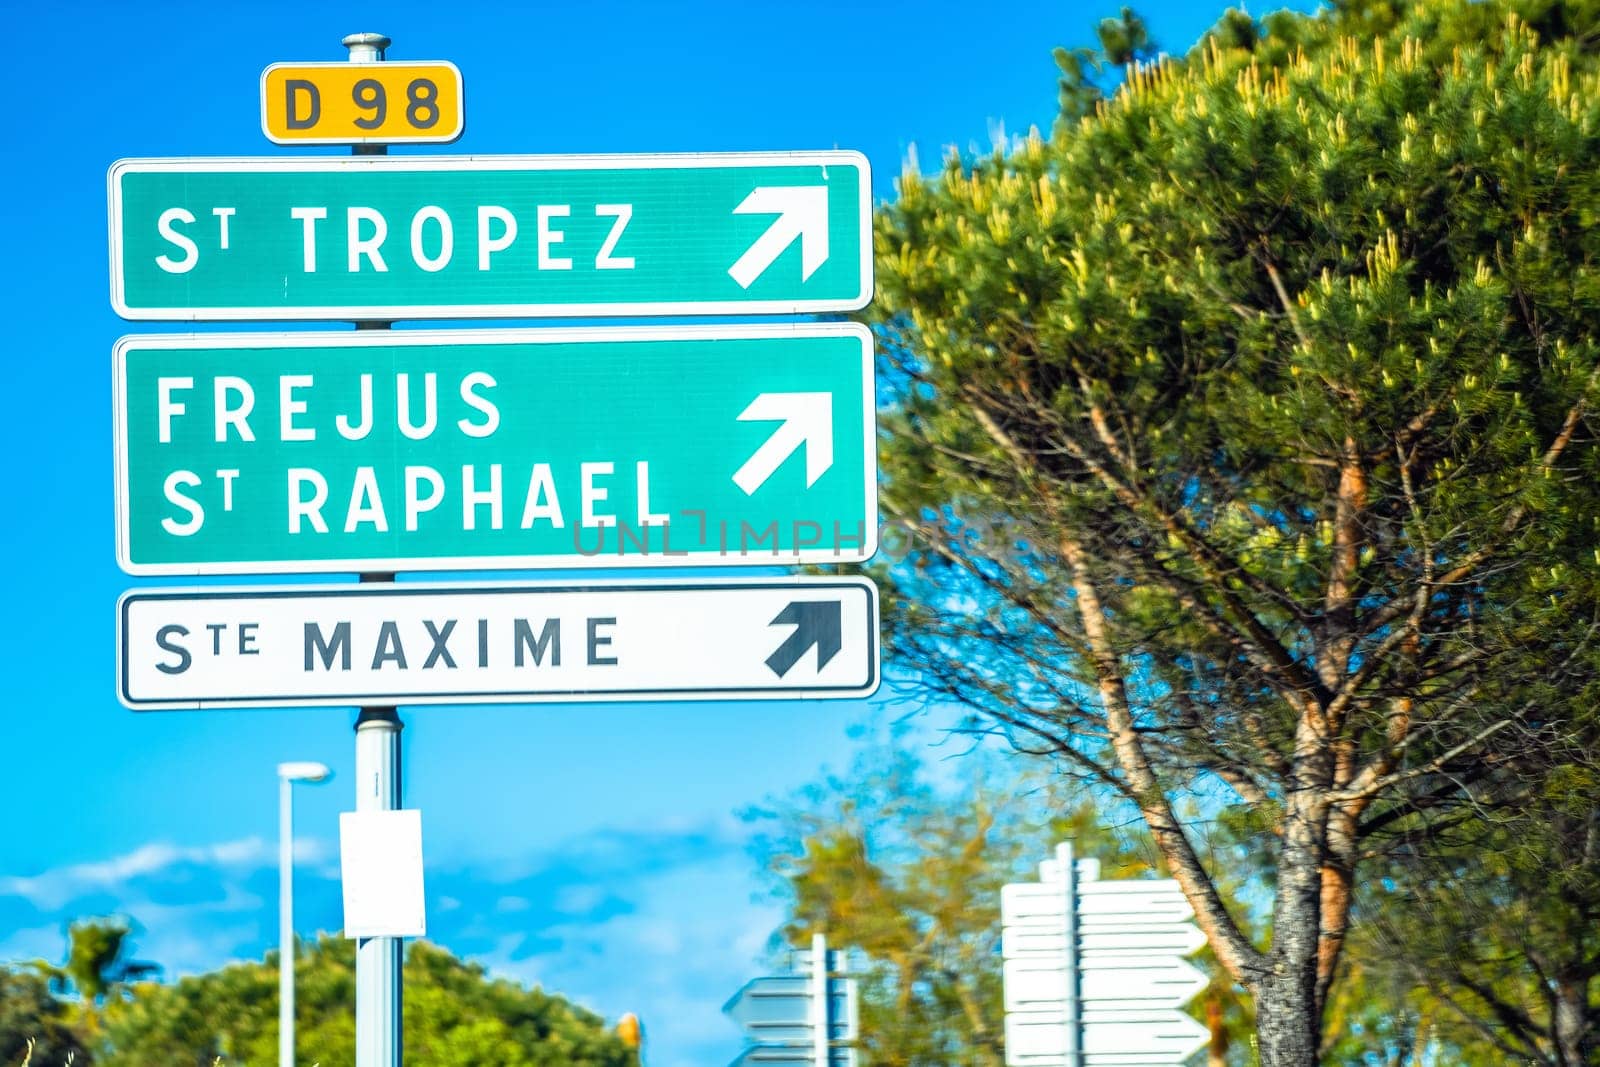 Cote d Azur road sign to Saint Tropez by xbrchx